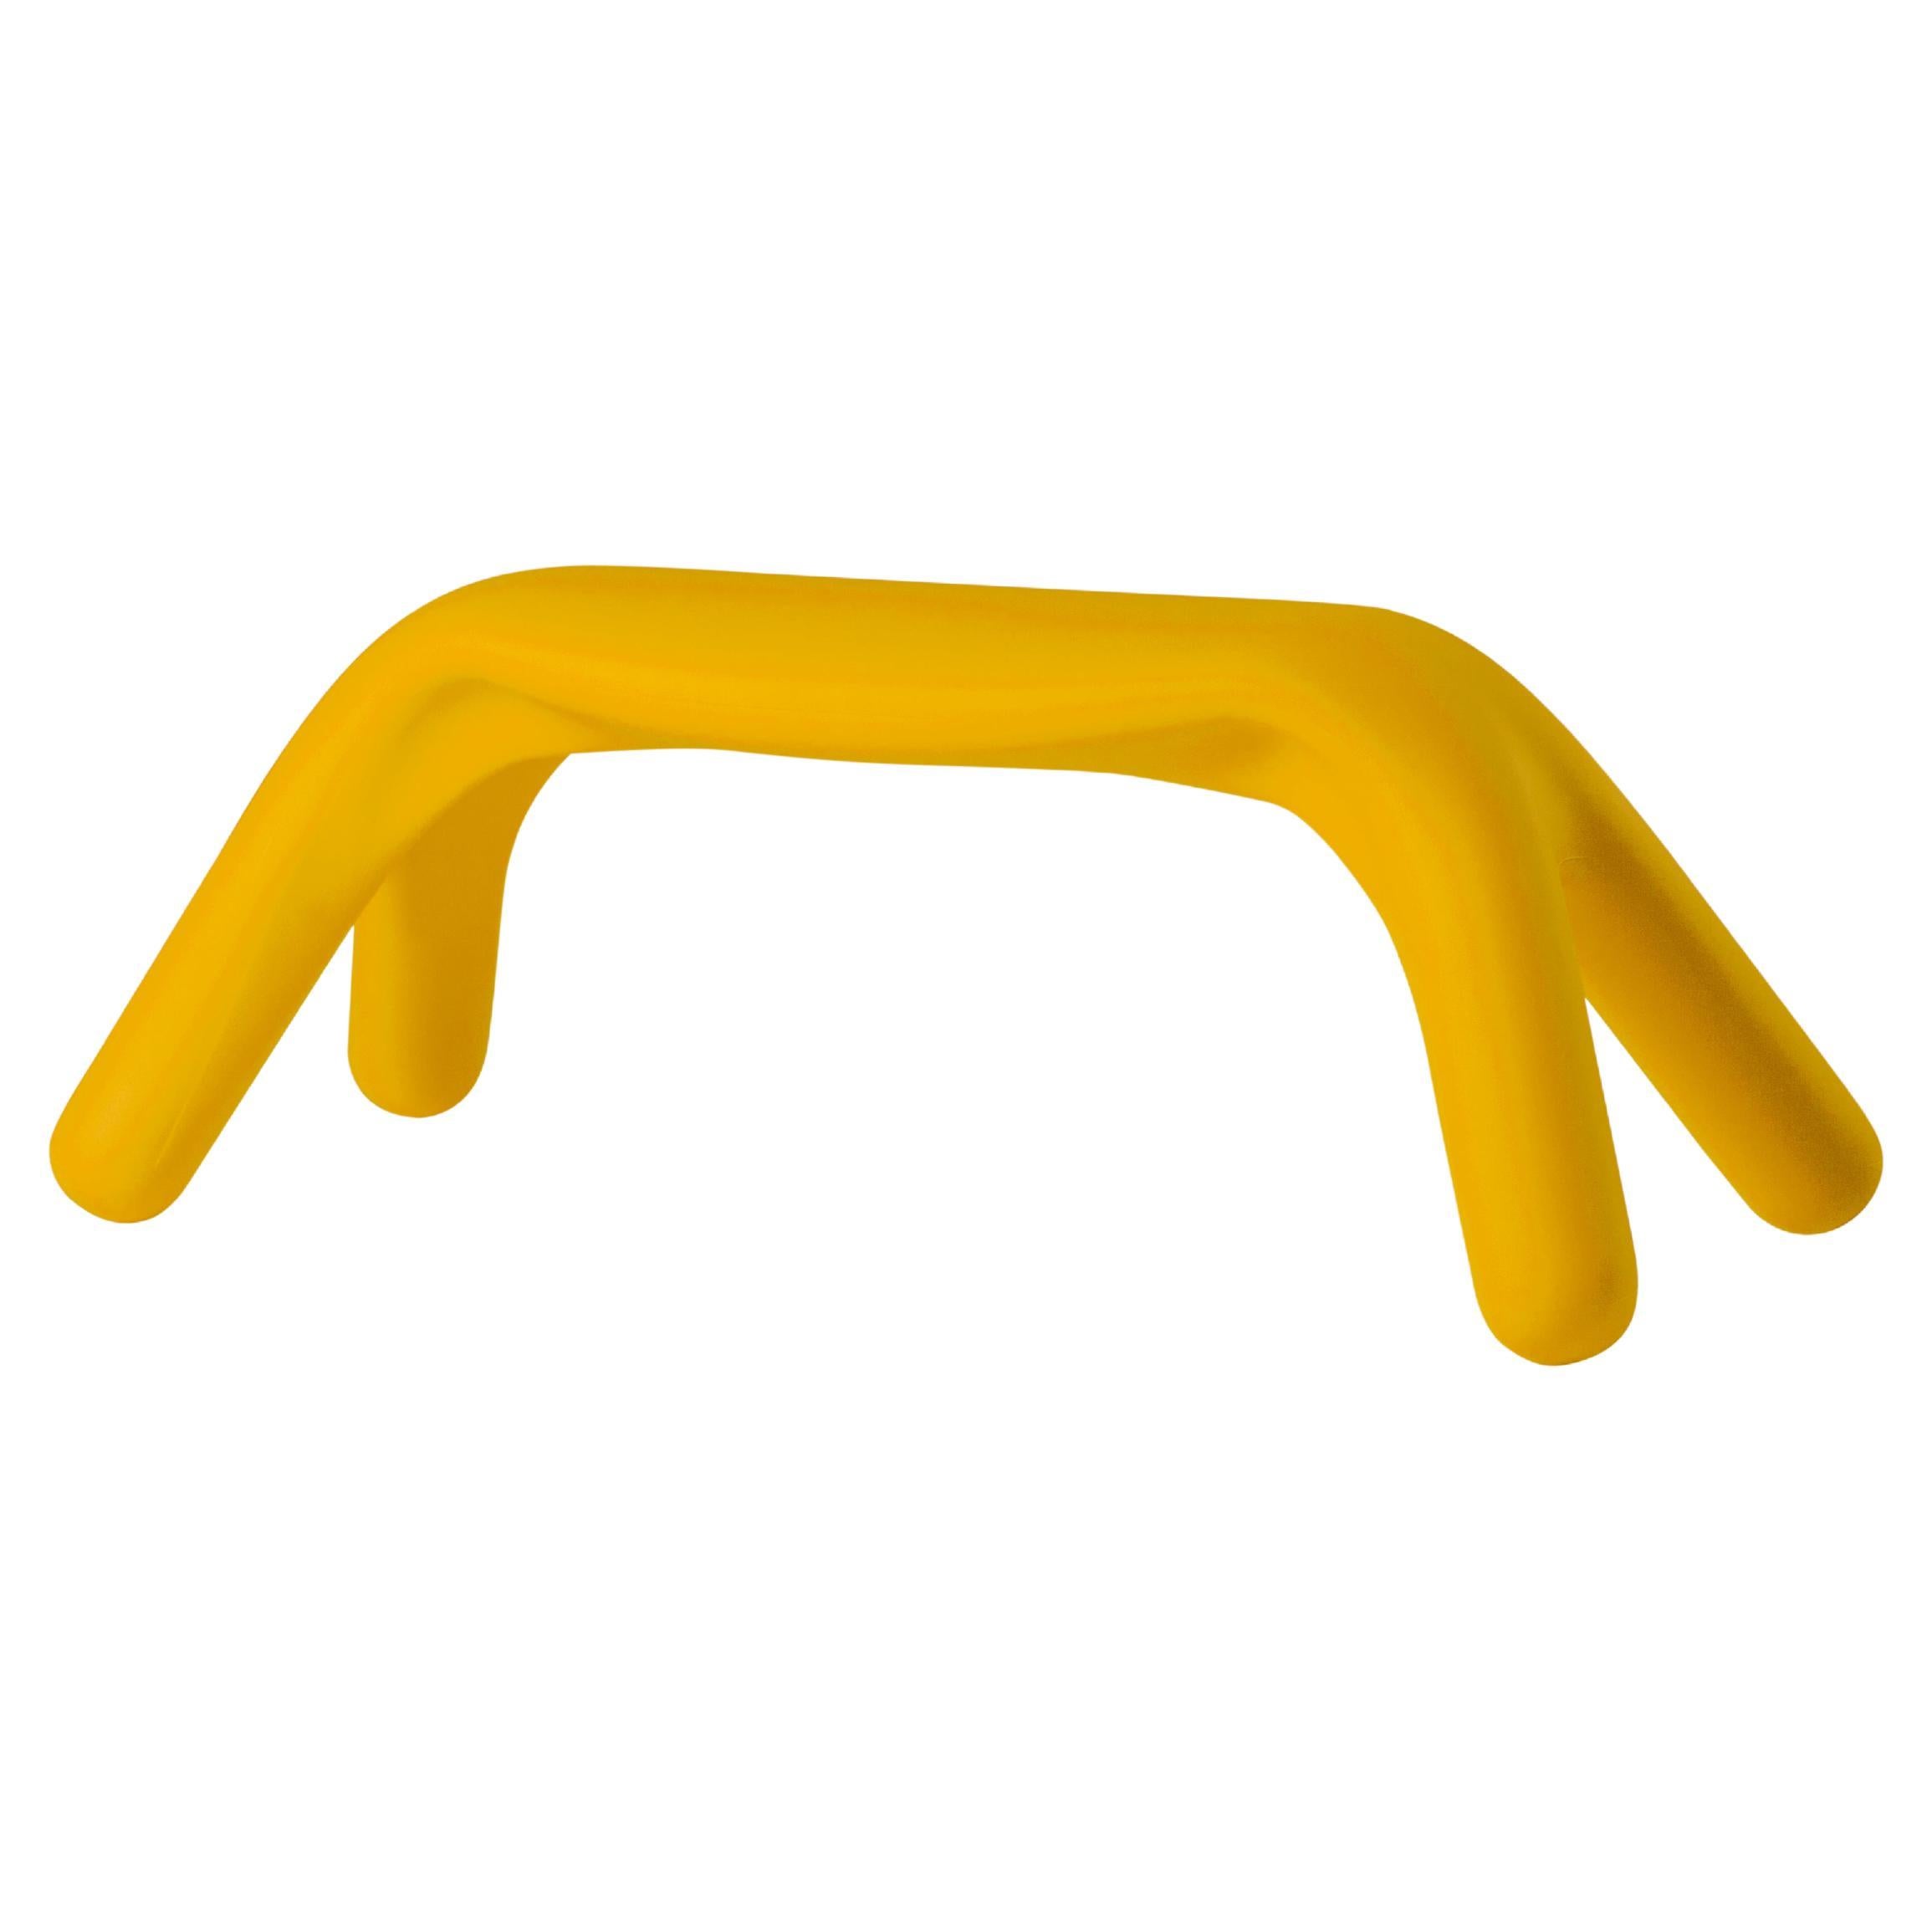 Slide Design Atlas Bench in Saffron Yellow by Giorgio Biscaro For Sale